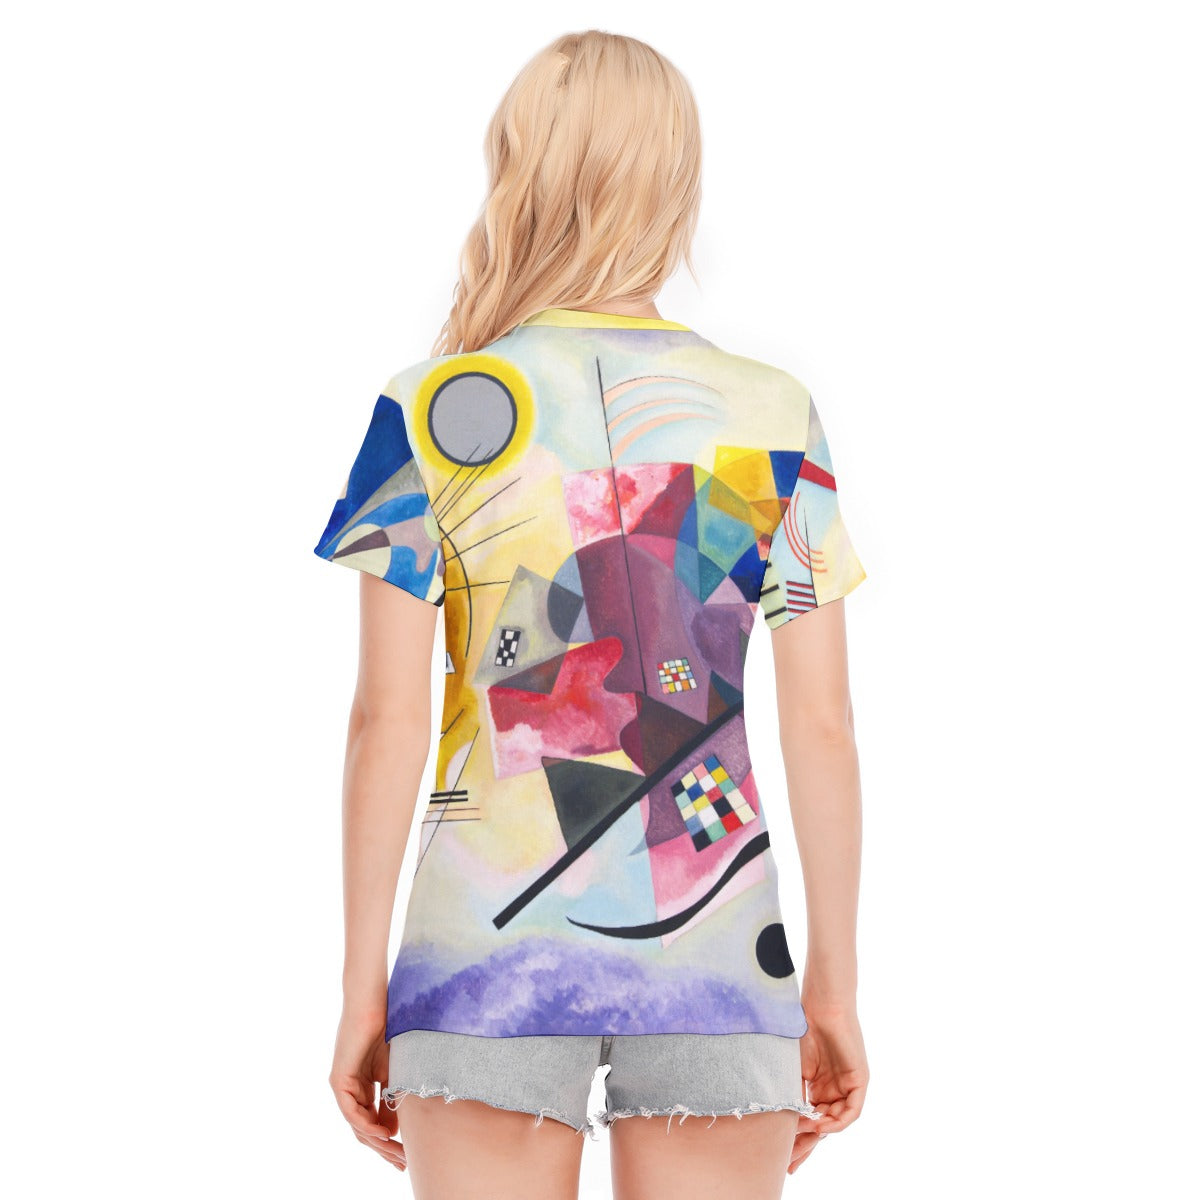 Abstract Art Shirt for Women